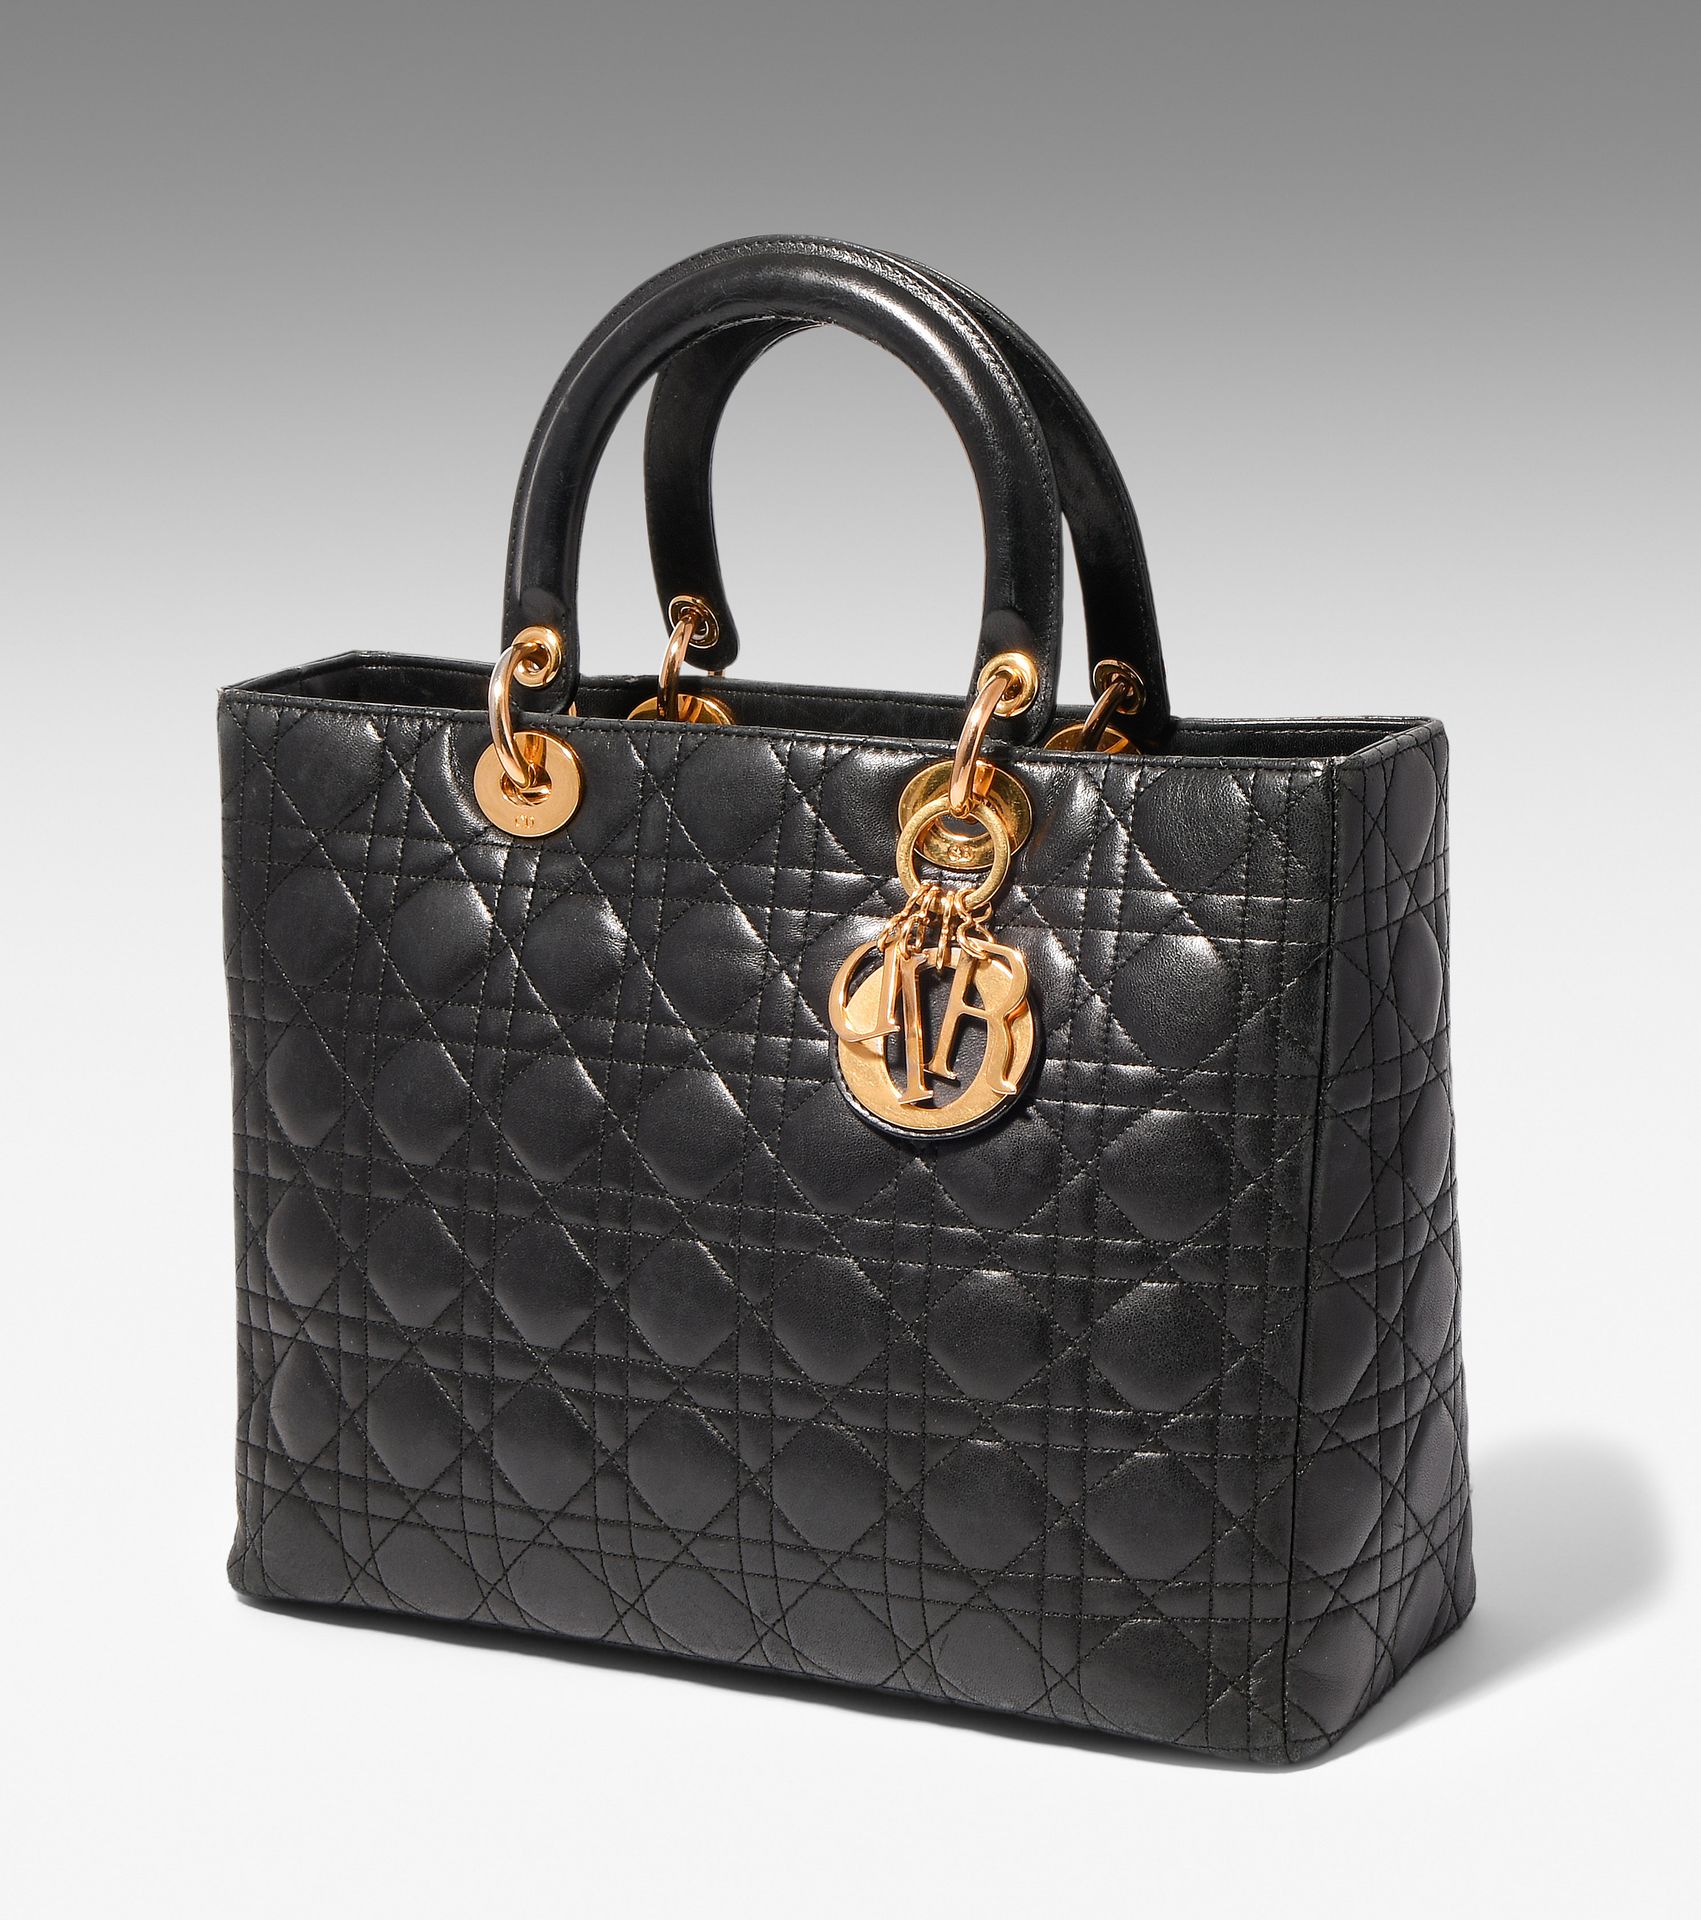 Dior, Handtasche "Lady Dior" Dior, Handtasche "Lady Dior"
Aus schwarzem, gestepp&hellip;